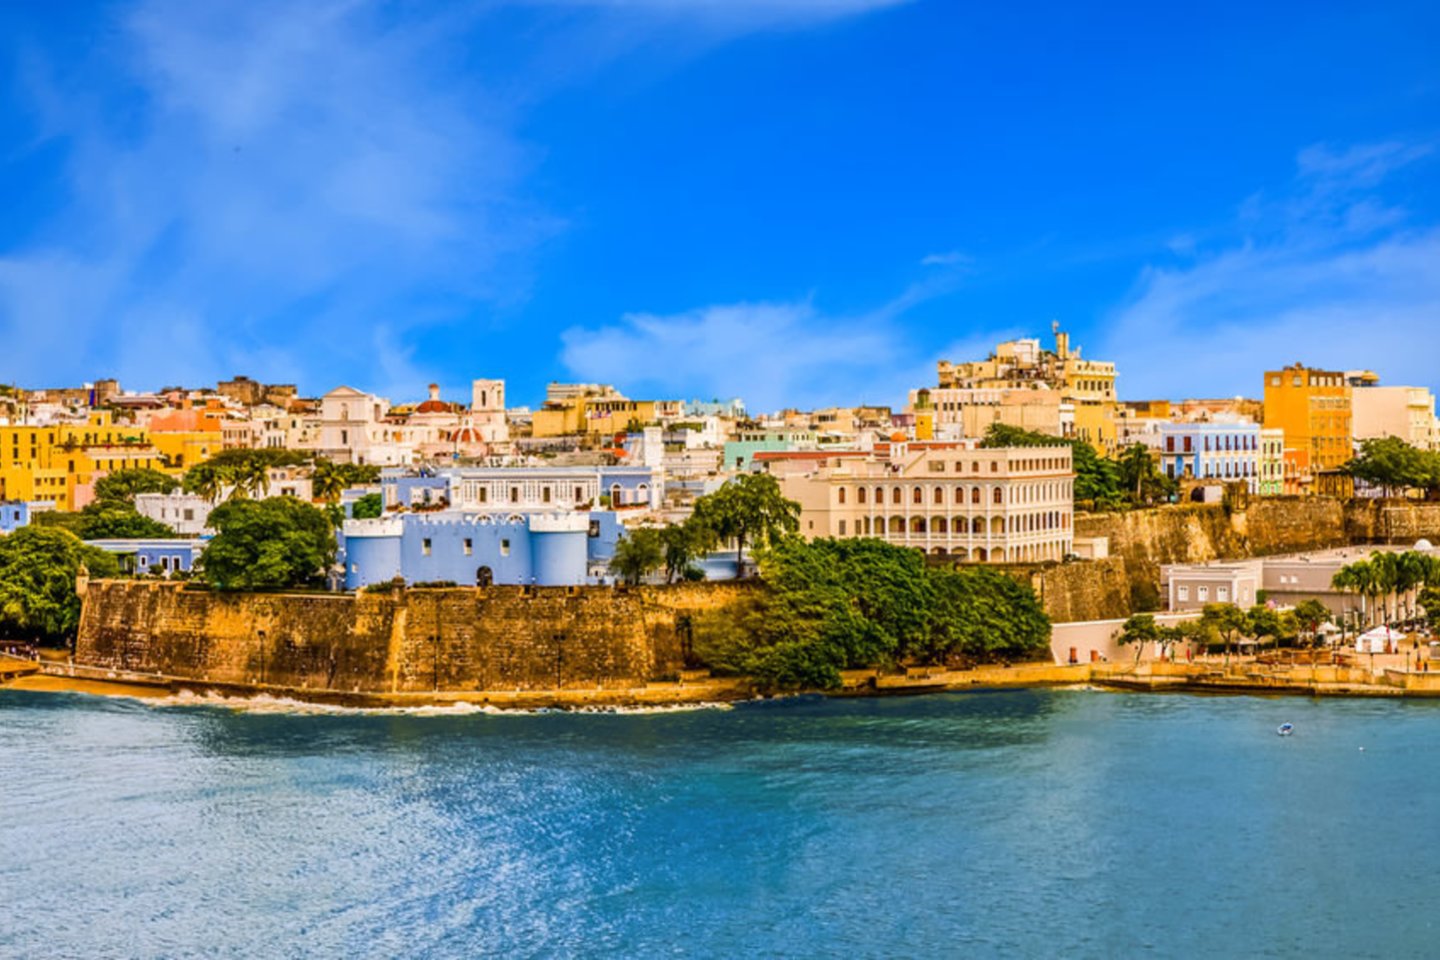 1493 m. Kristupas Kolumbas antrosios kelionės per Atlanto vandenyną metu atrado salą, kurią Ispanijos karaliaus sūnaus Juano garbei pavadino San Chuano Bautistos (šv.Jono Krikštytojo) vardu. Vėliau salai prigijo jos uosto Puerto Riko (ispaniškai – turtingas uostas) pavadinimas.<br>123rf